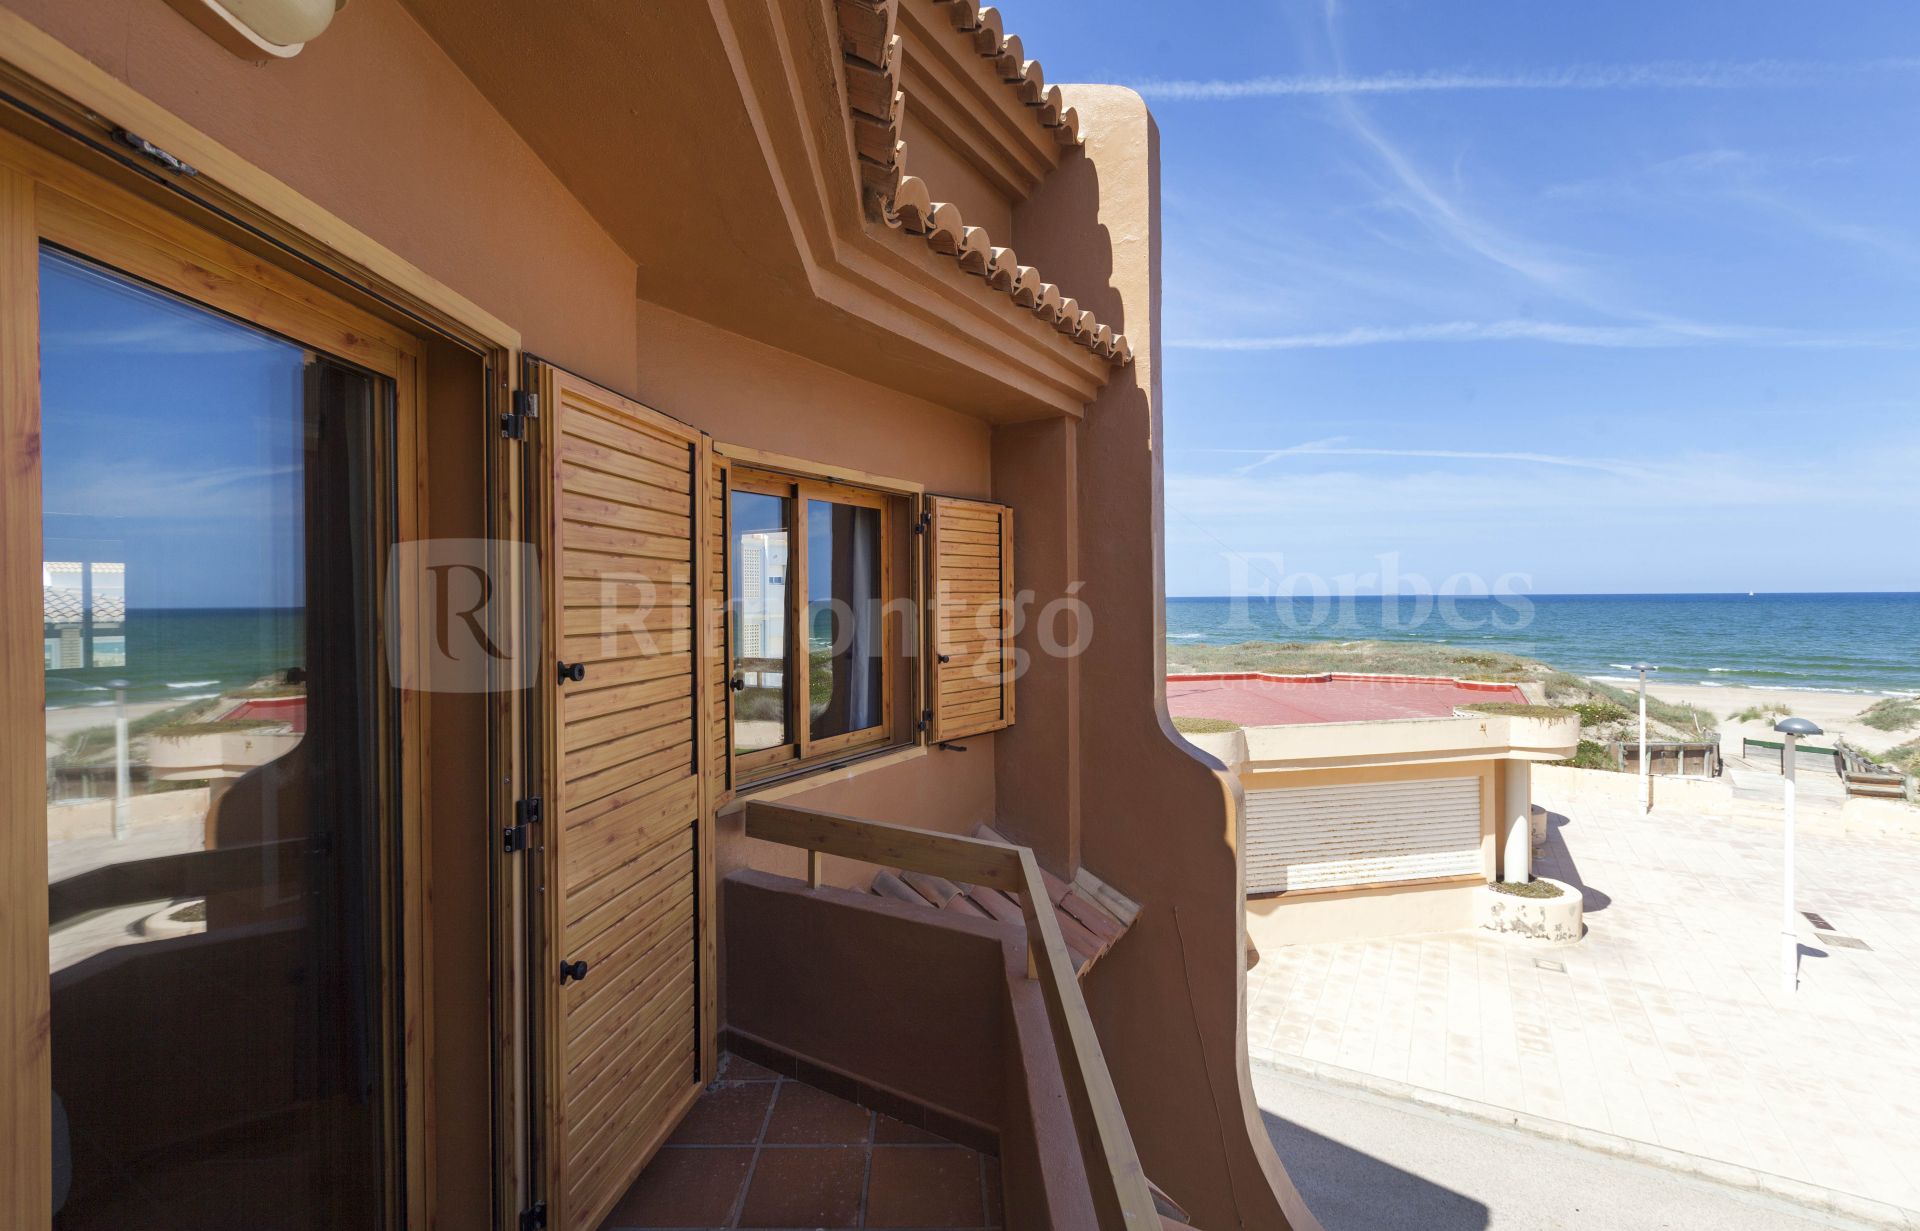 Adosado con terrazas y acceso directo a la playa en El Perellonet.